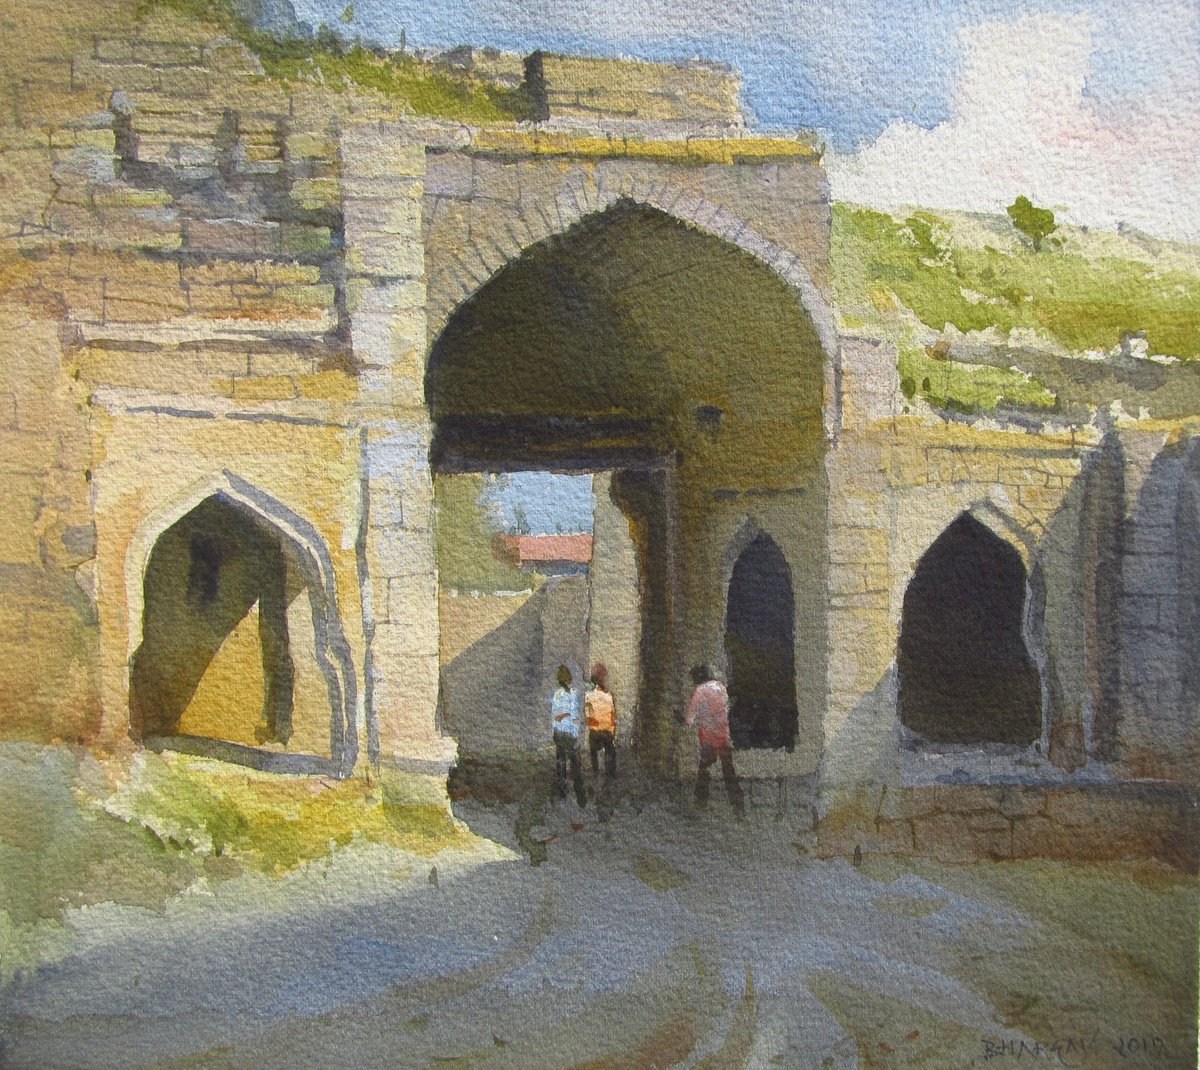 Passage by Bhargavkumar Kulkarni